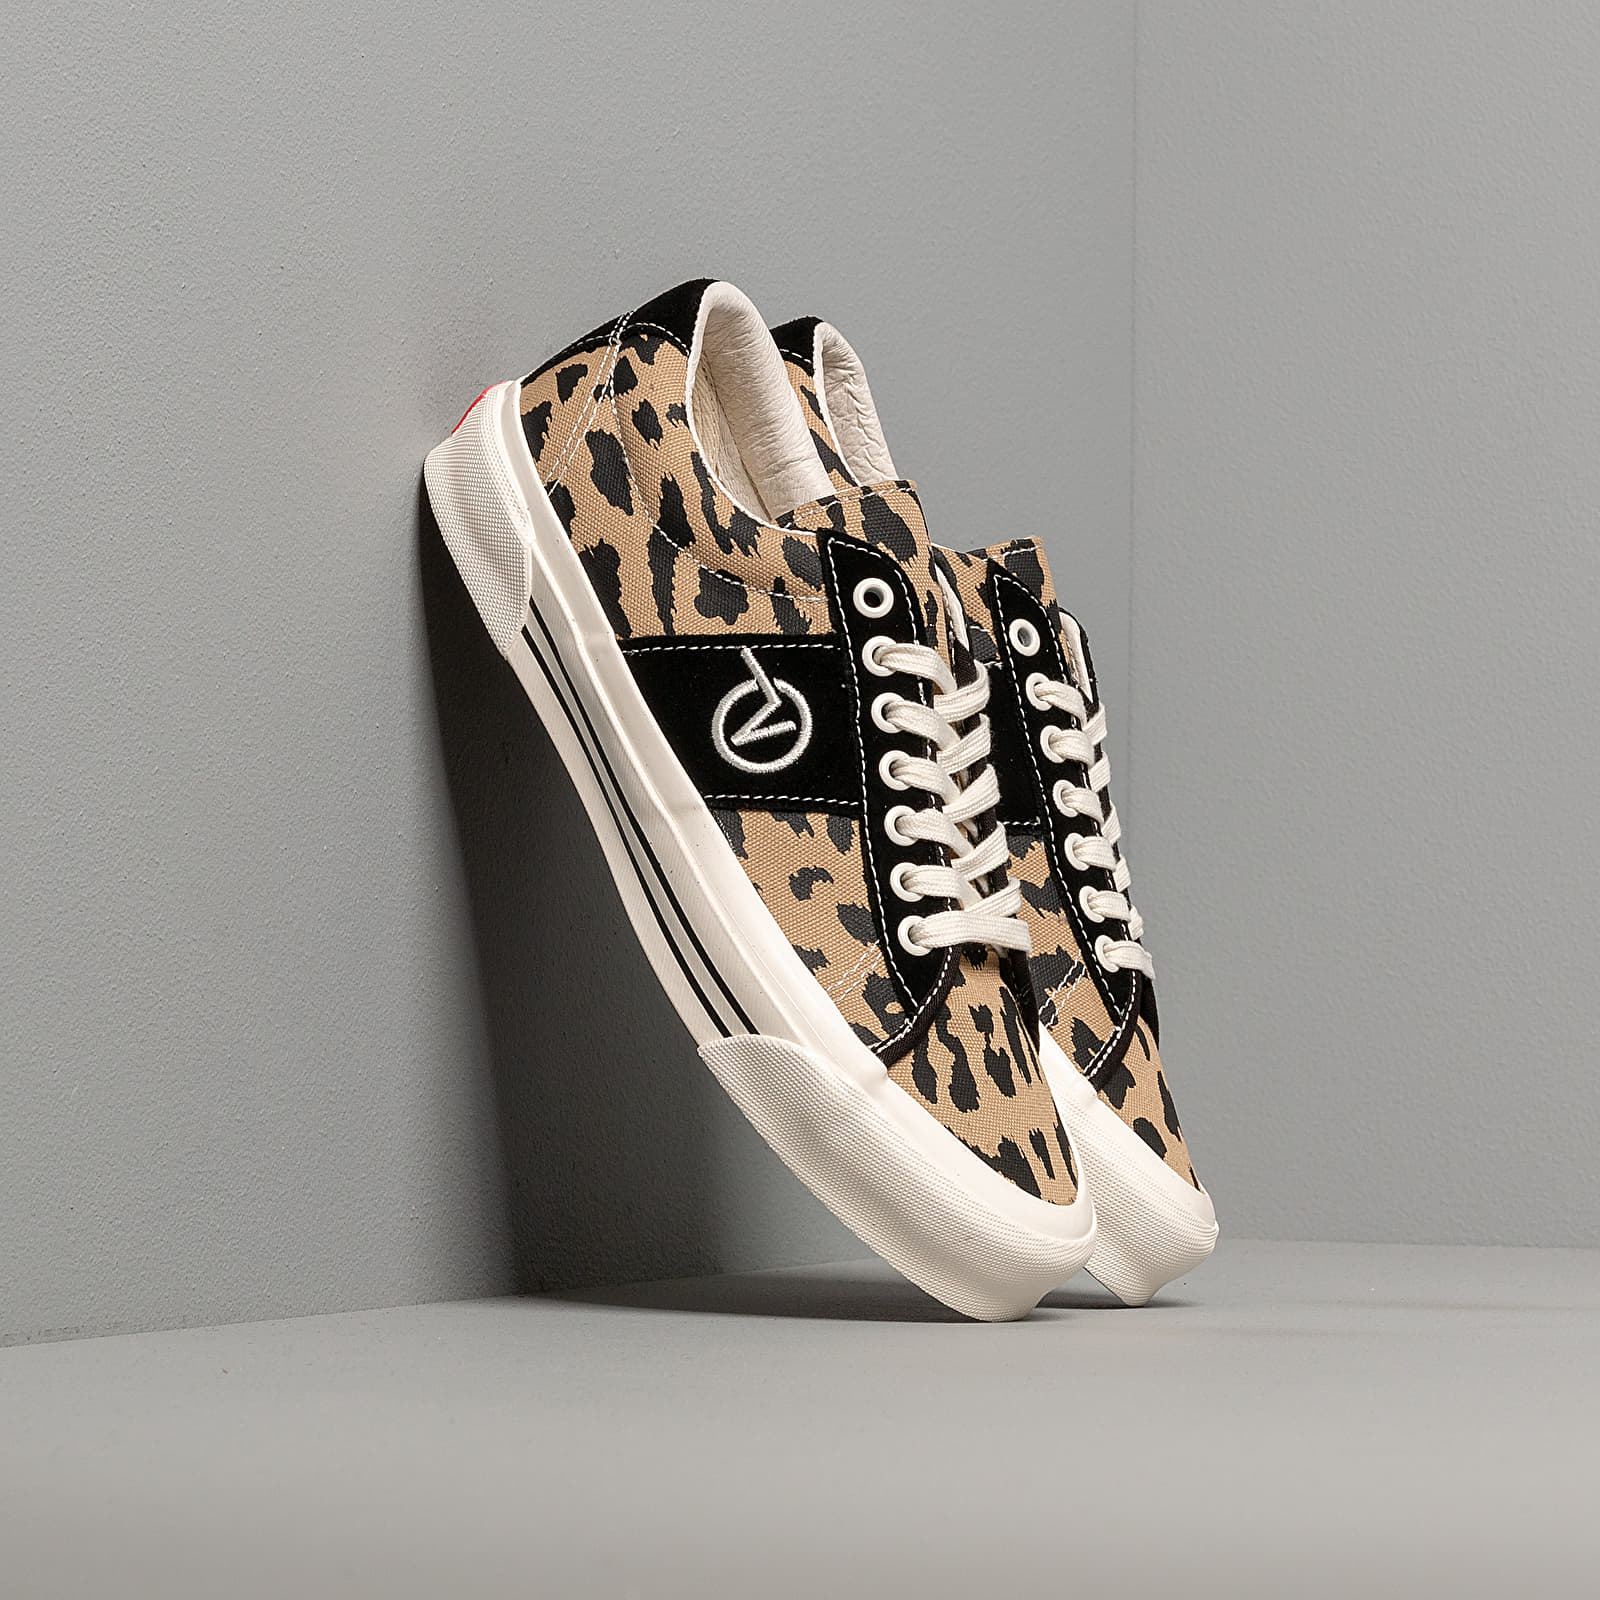 Chaussures et baskets homme Vans OG Sid LX (OG) Leopard/ Marshmallow